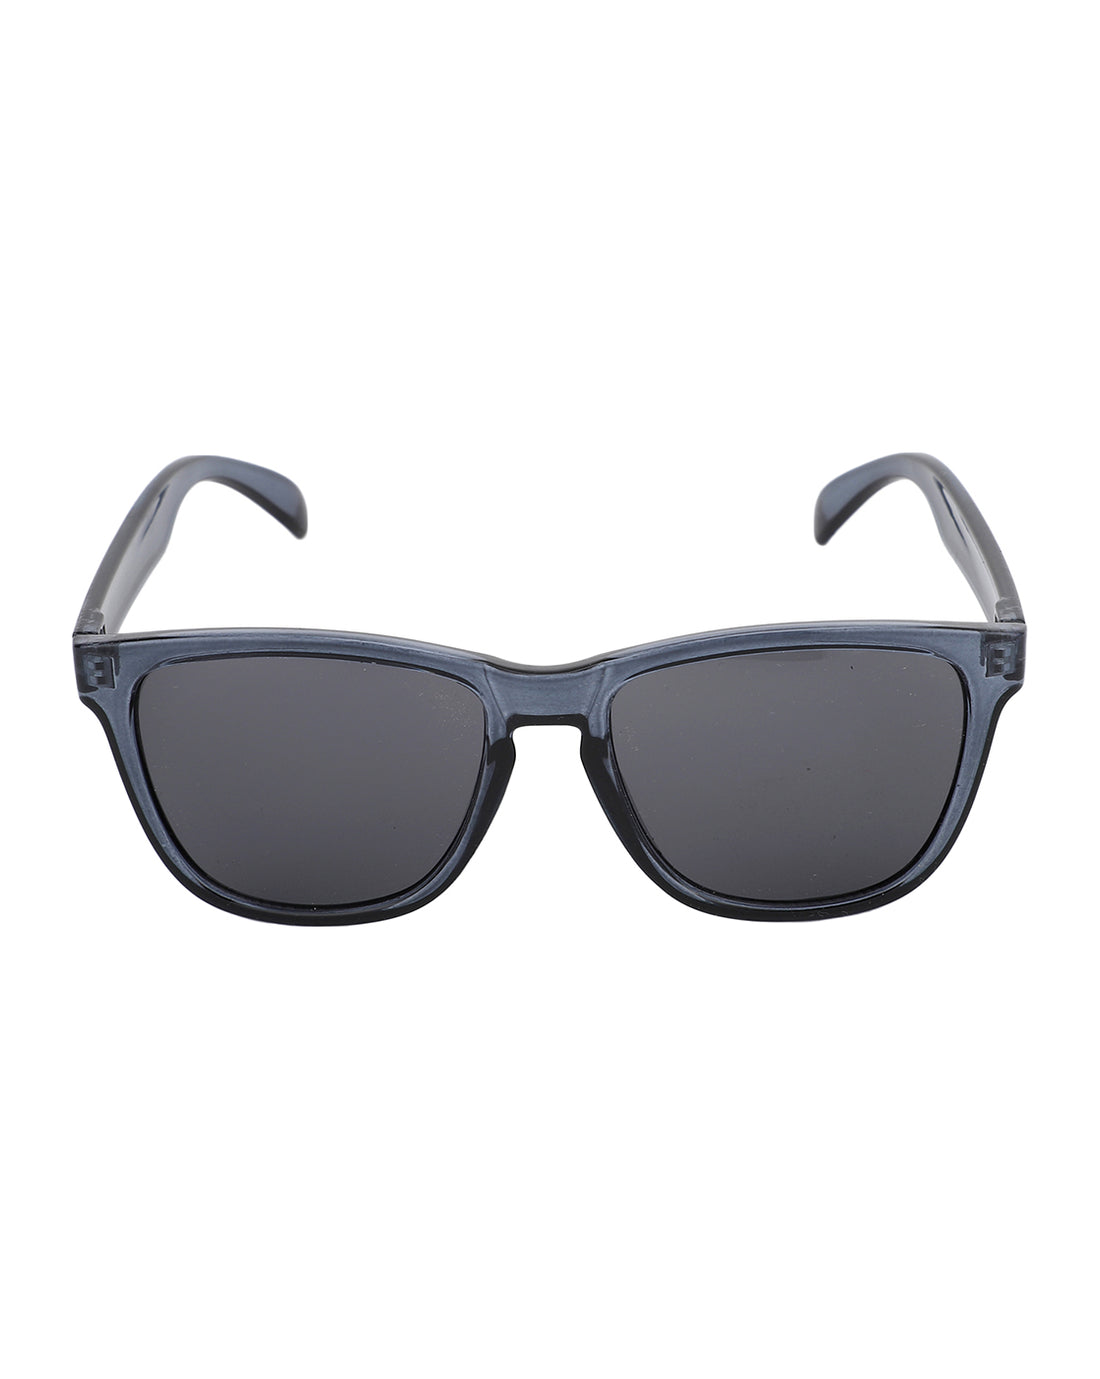 Carlton London  Black Square Sunglasses Uv Protected Wayfarer Sunglasses For Men